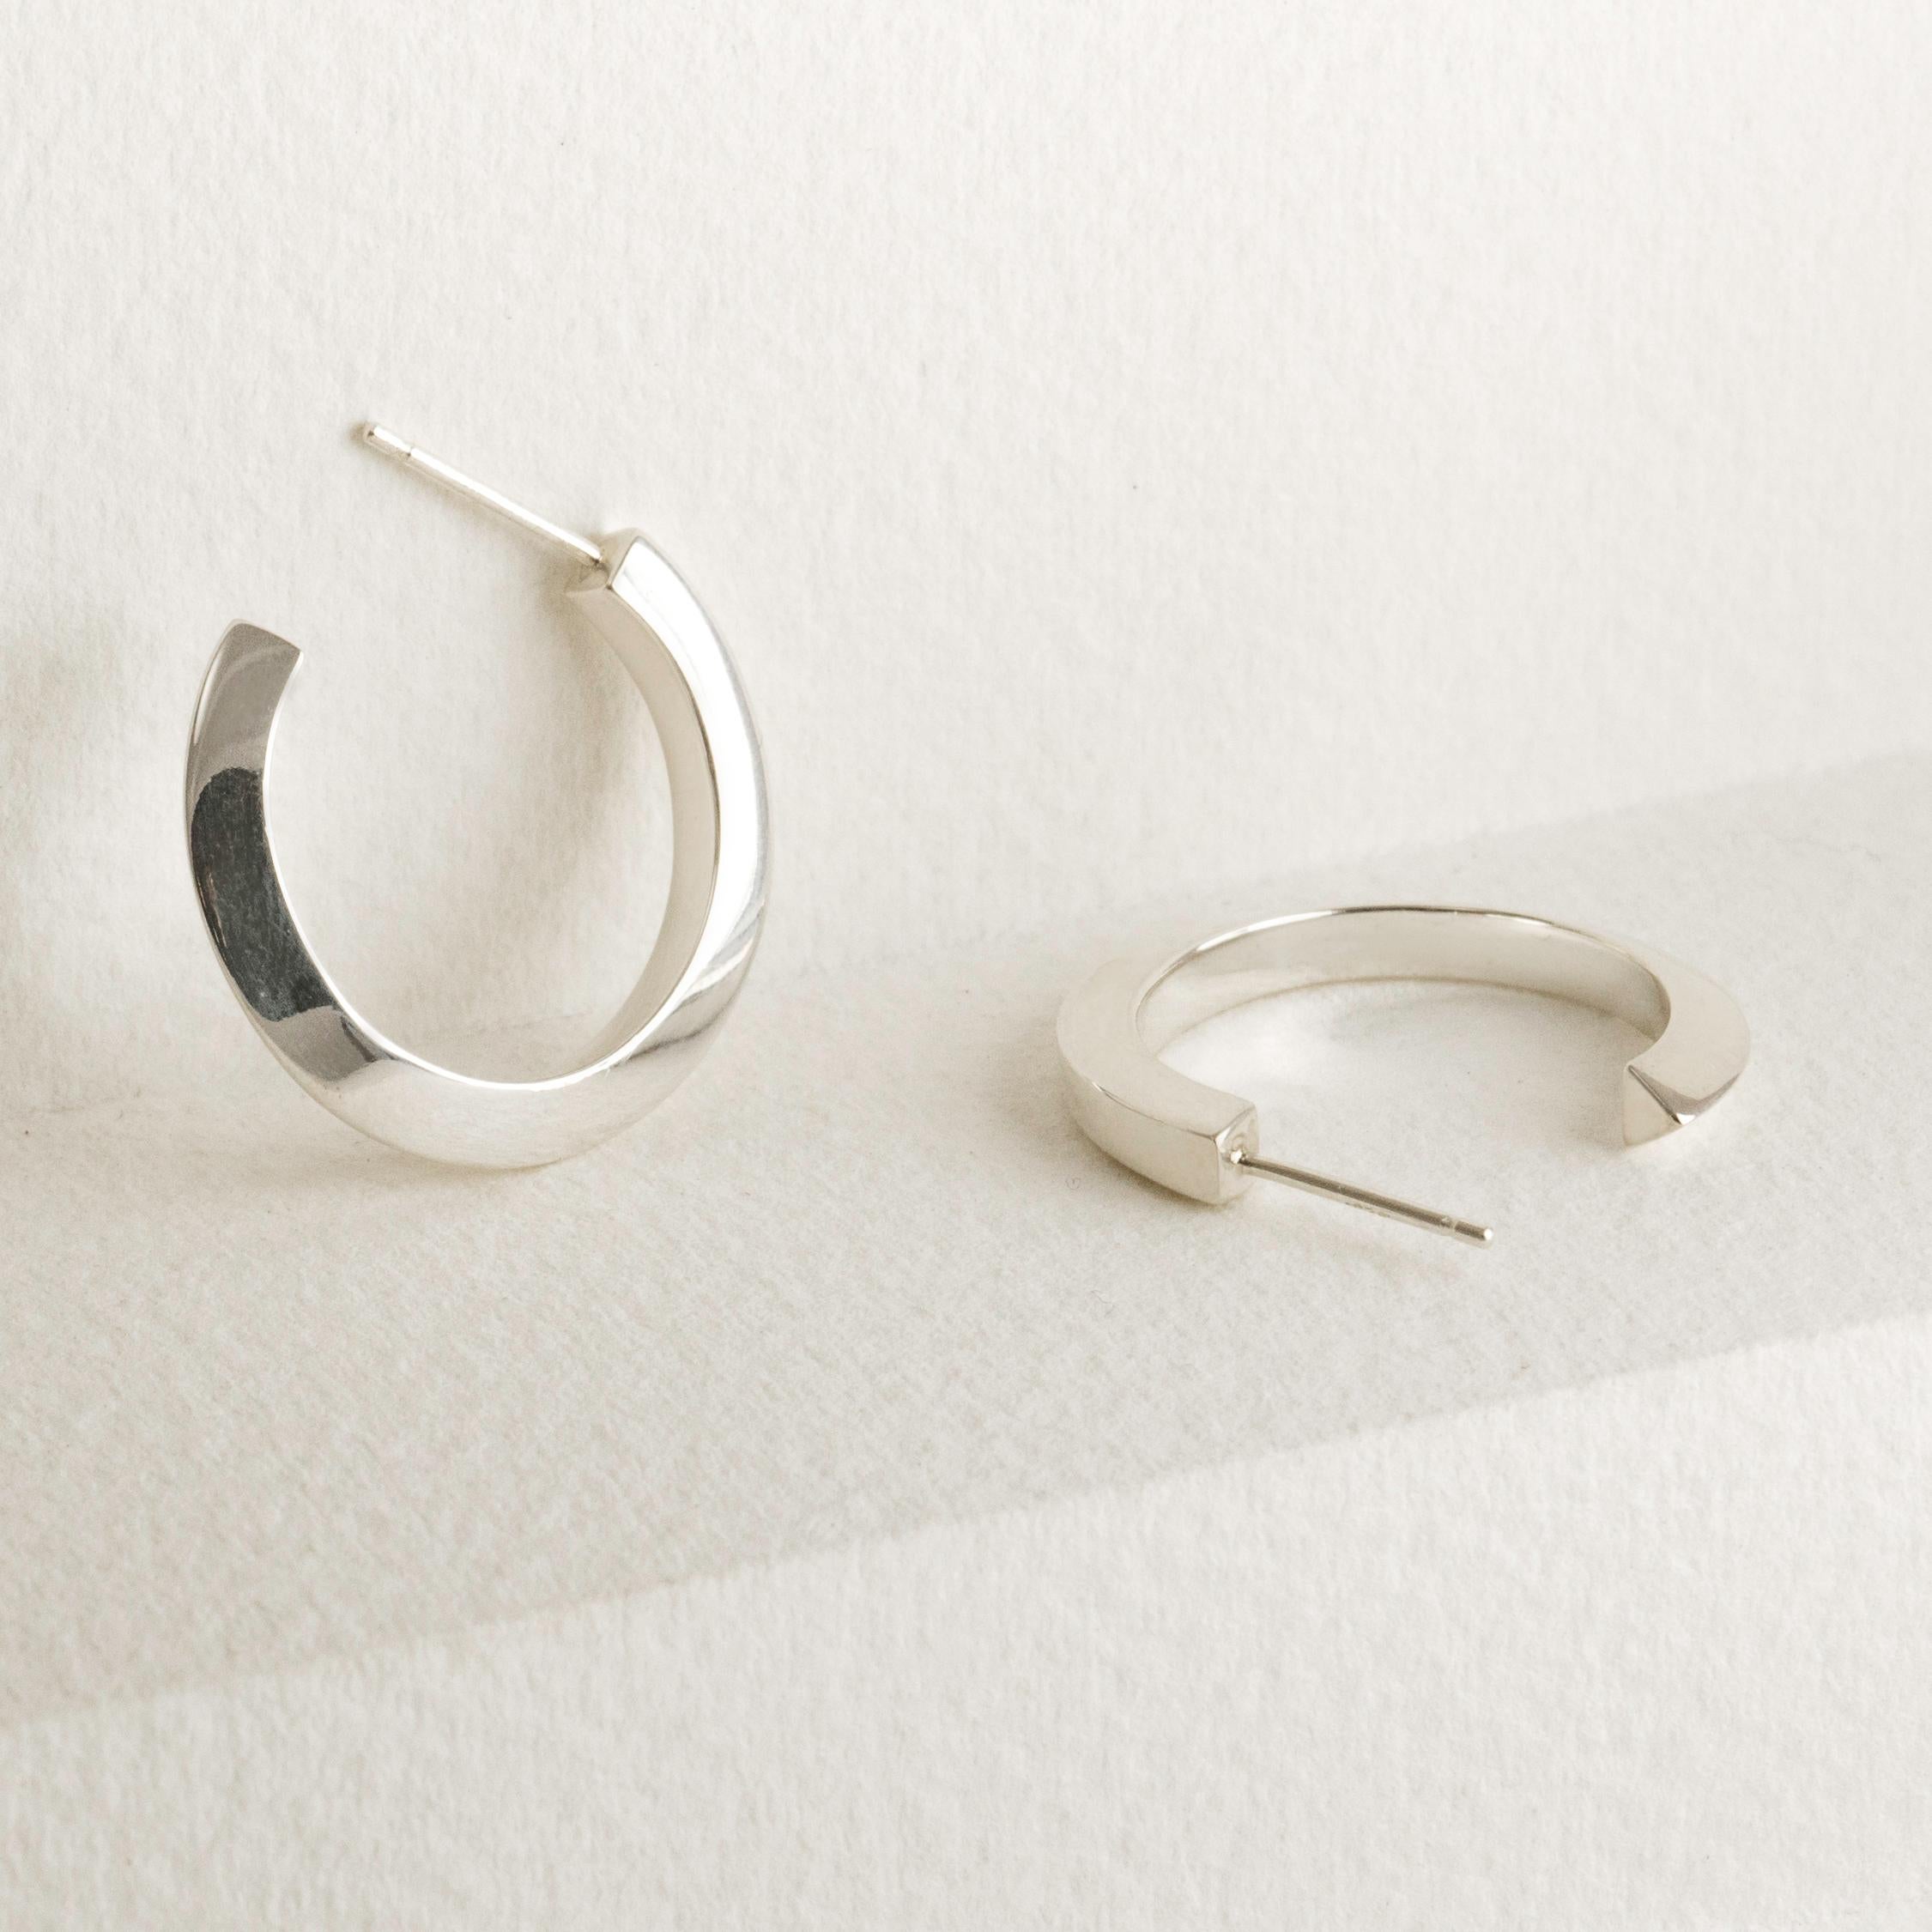 Die Medium Flow Hoop-Ohrringe beginnen als Quadrat und gehen nahtlos in ein Dreieck über. Diese Ohrringe sind ein vielseitiges und elegantes Statement, eine zeitlose Neuinterpretation eines Klassikers.  Der aus massivem 14-karätigem Gold gefertigte